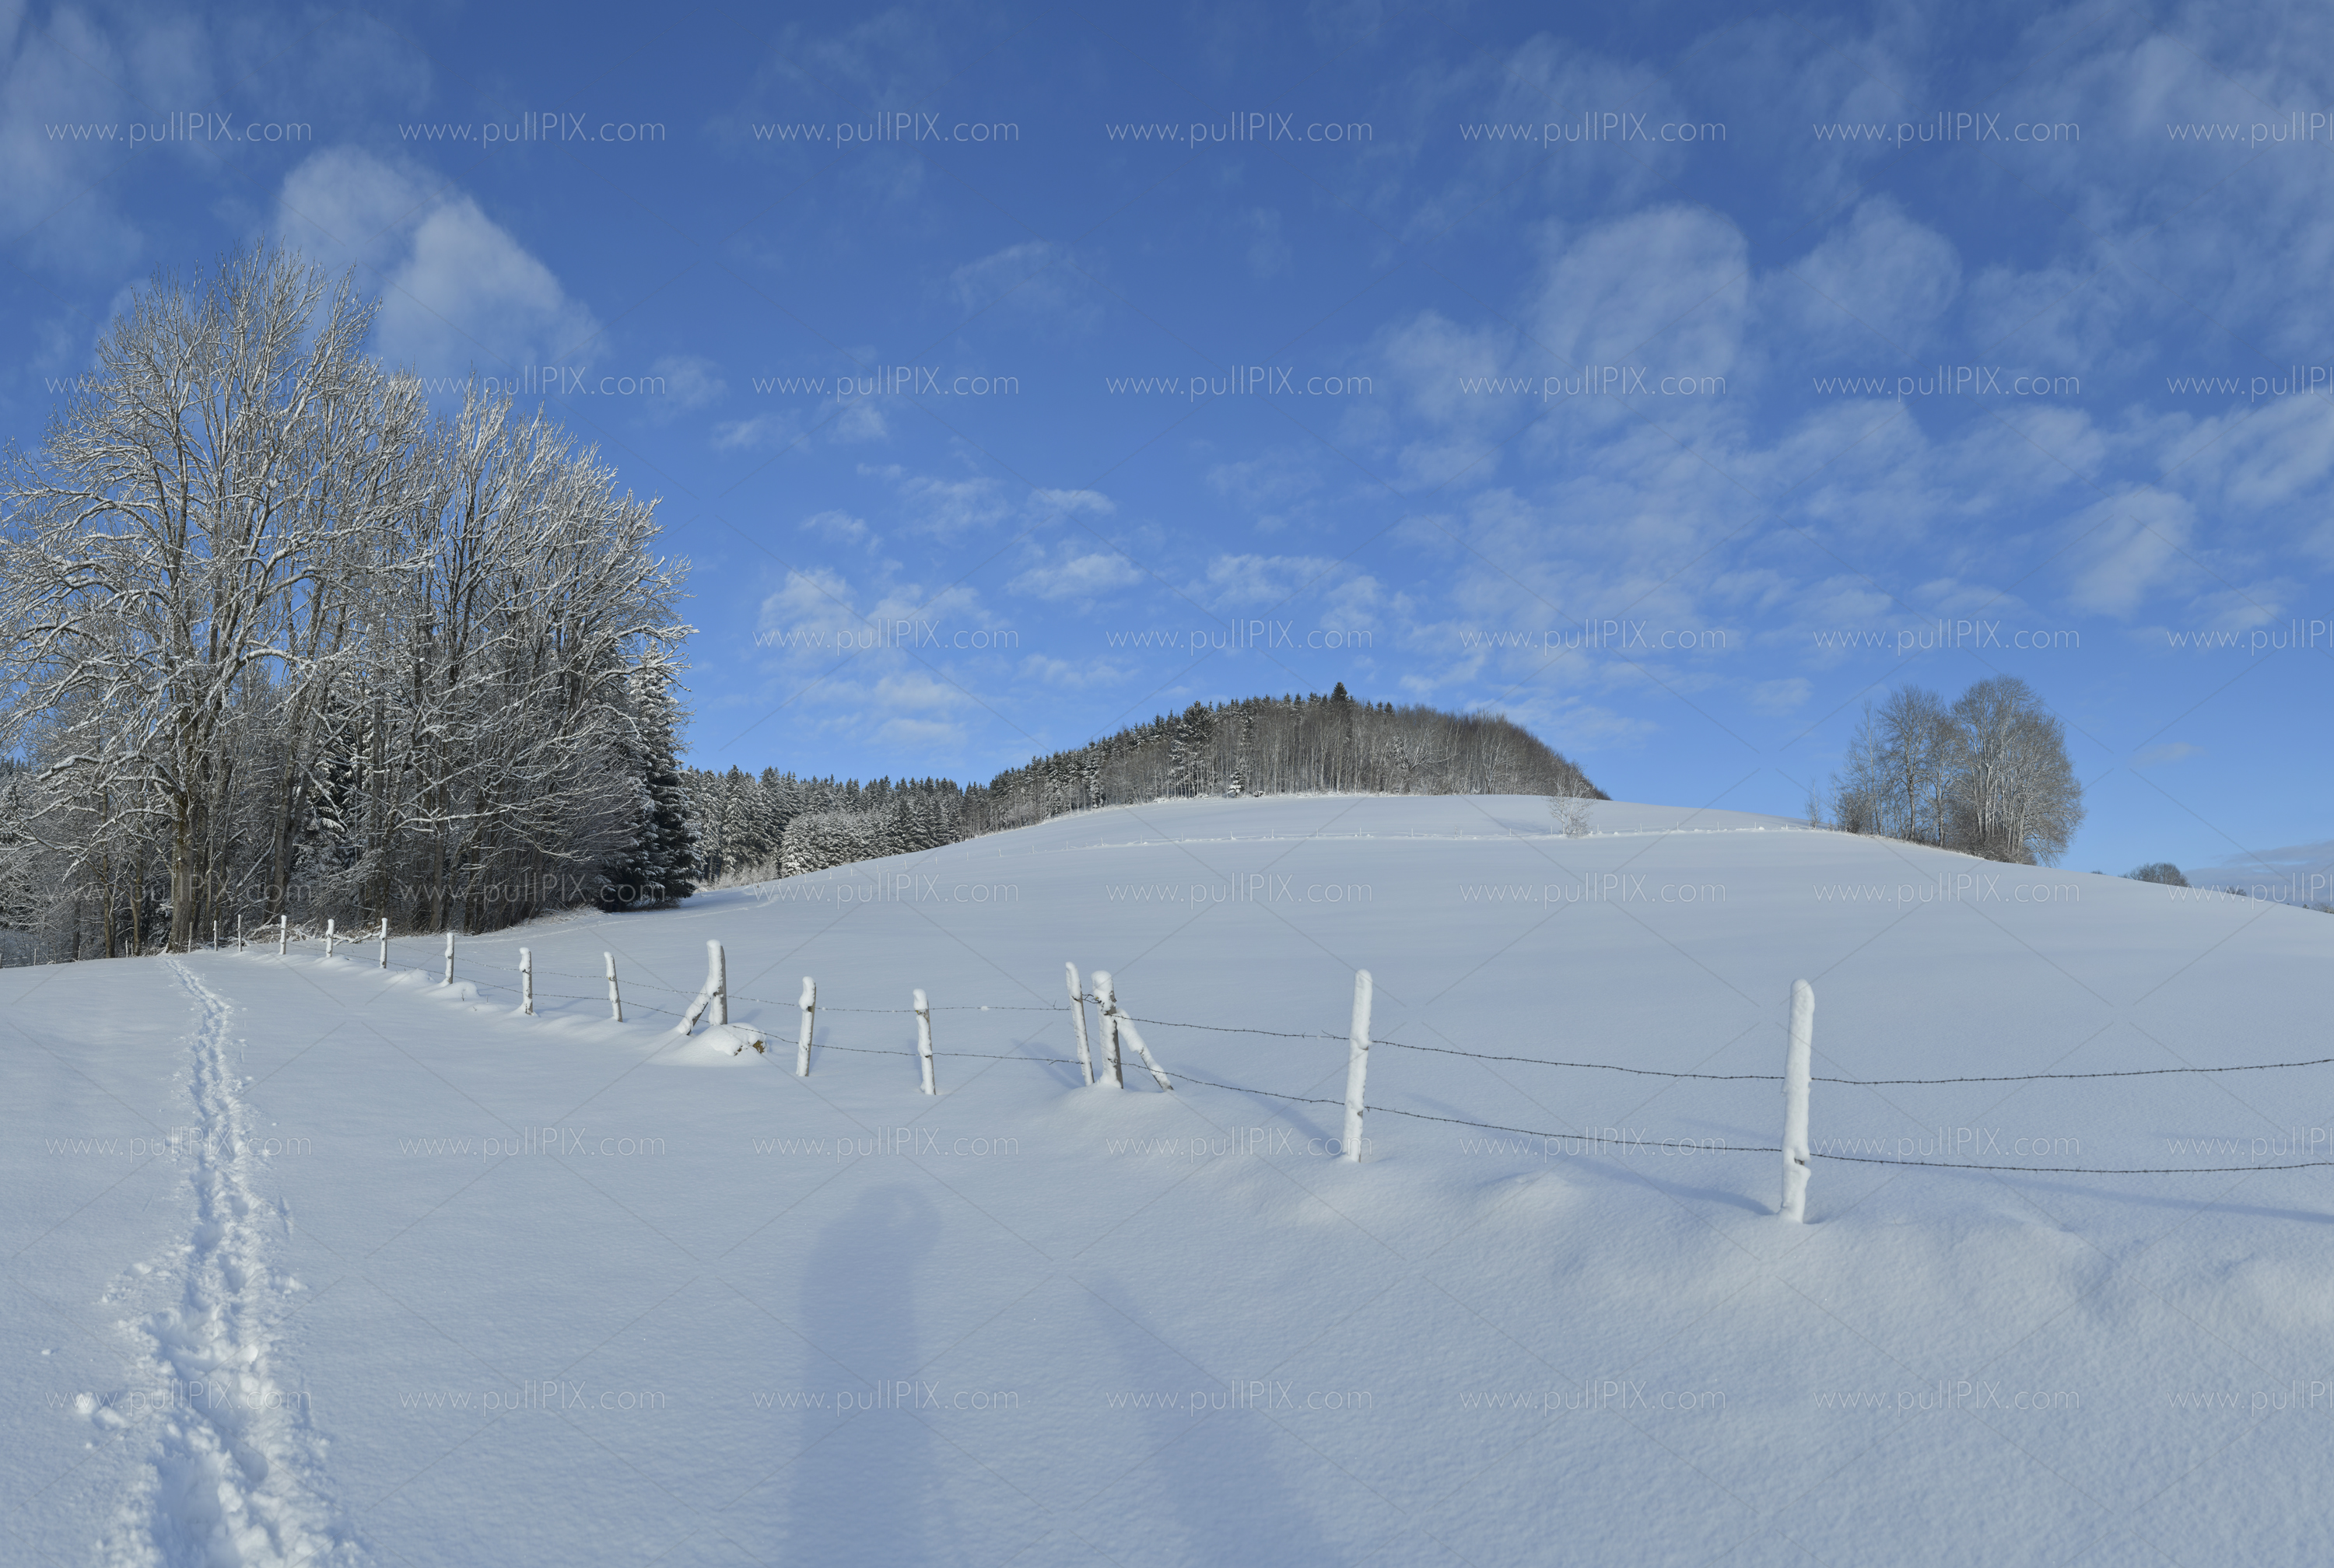 Preview winterliches allgaeu_9.jpg